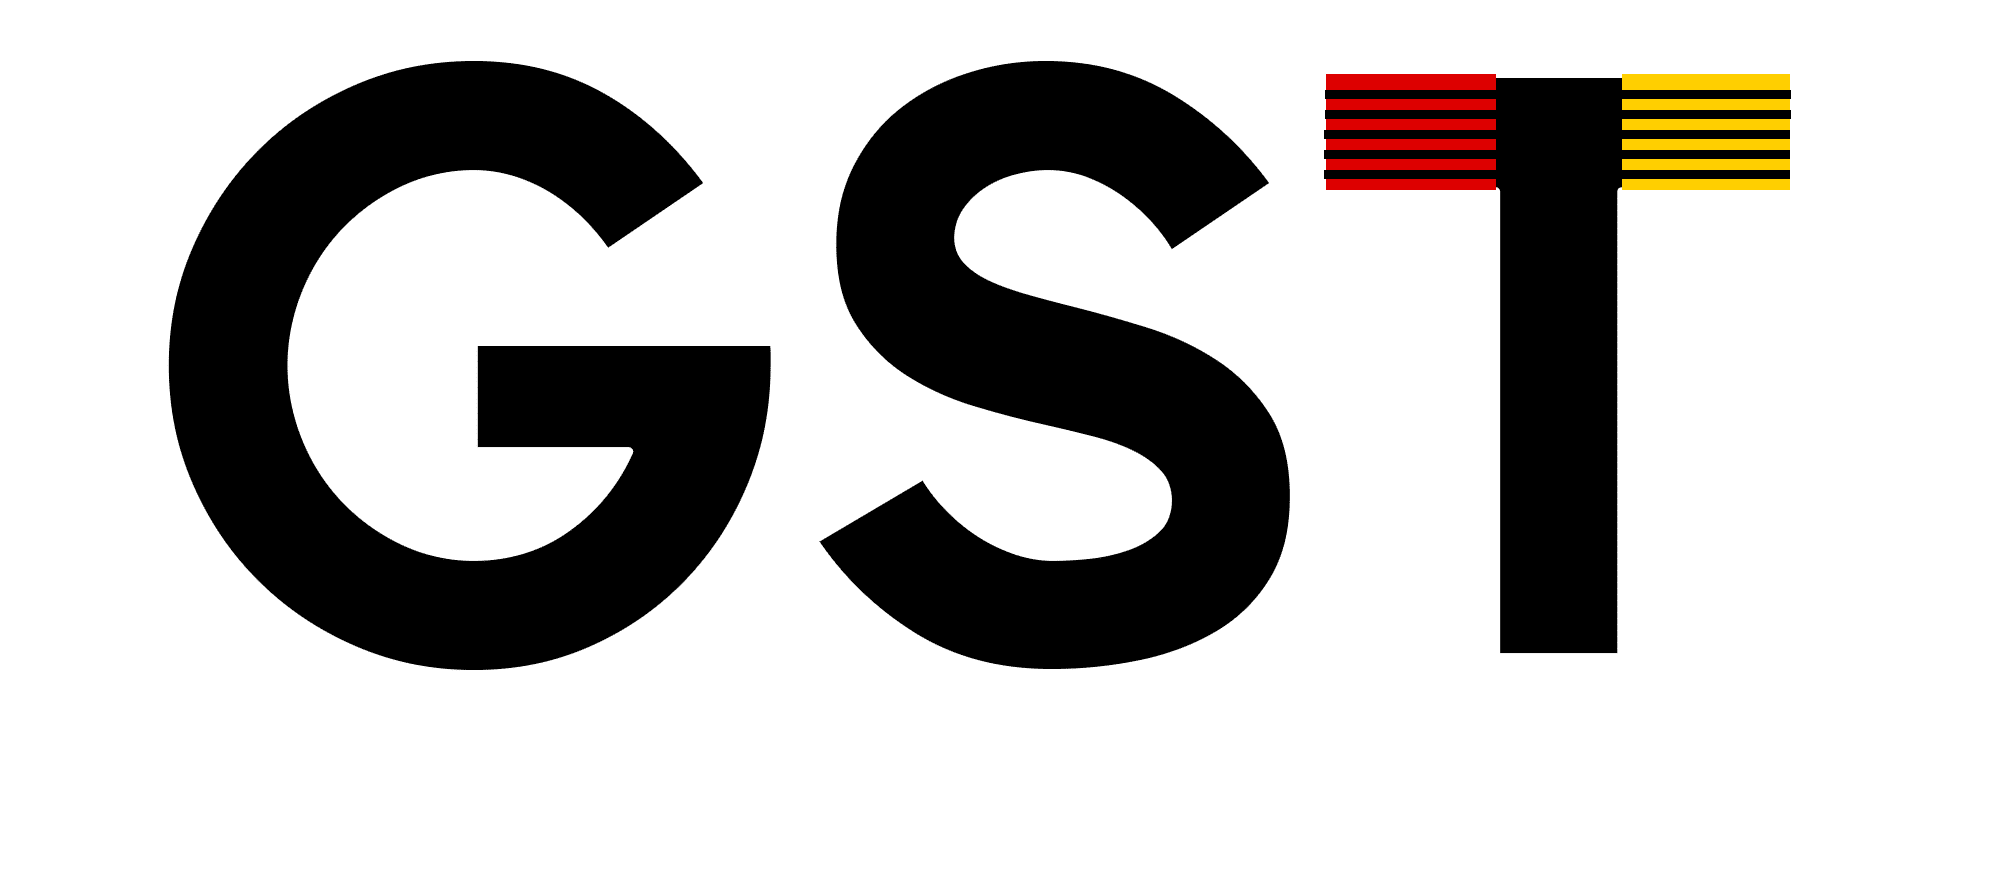 German Specialist Tools - Netherlands